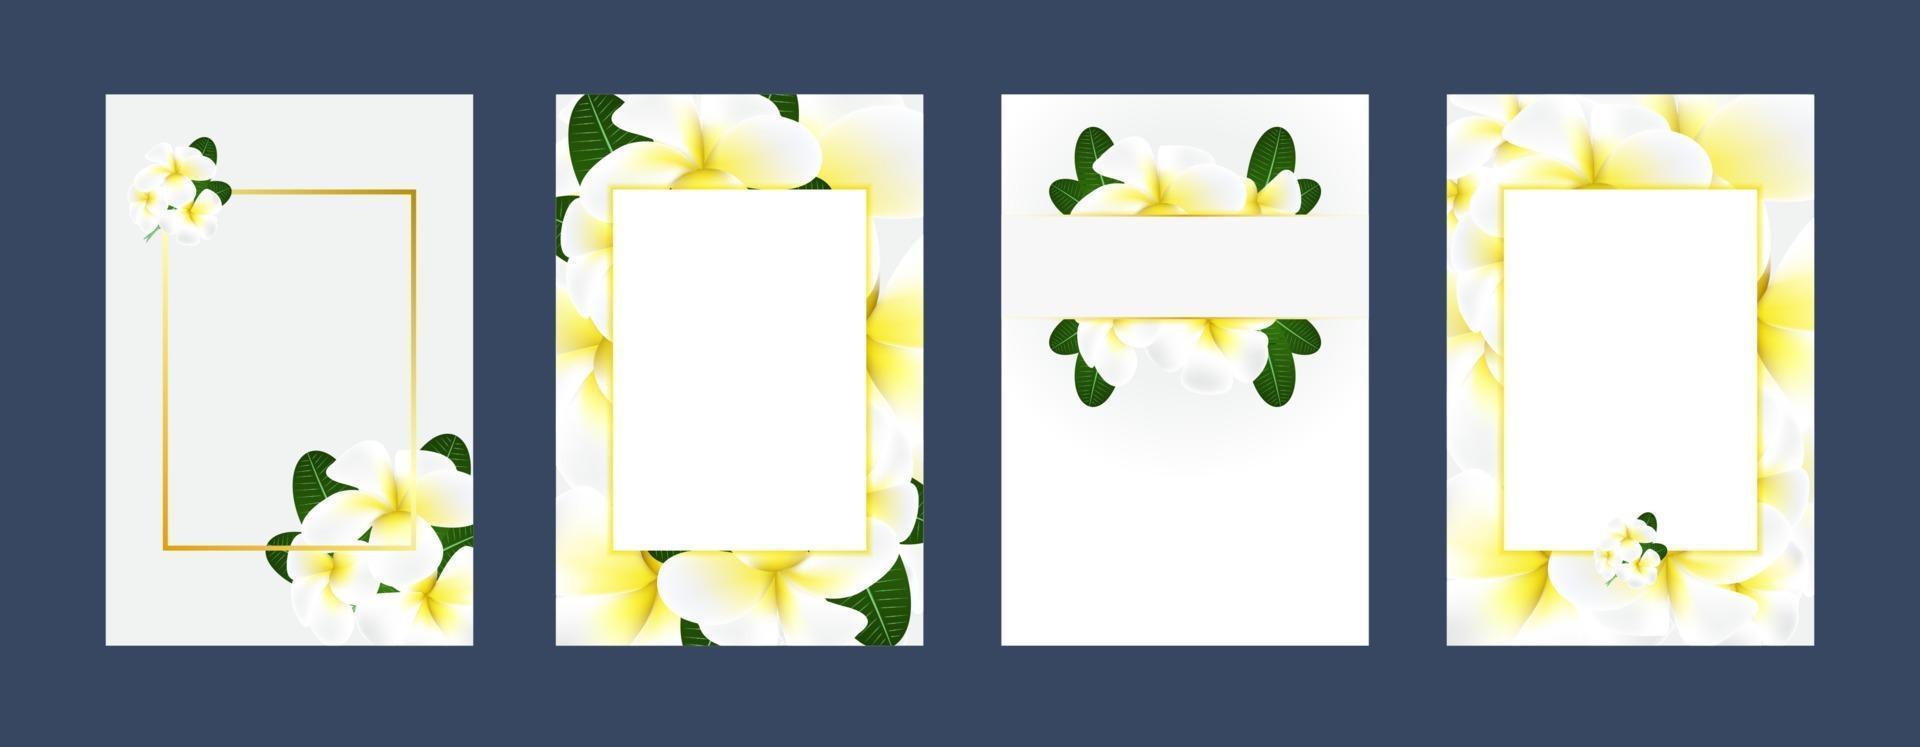 modello di carte invito a nozze con fiori bianchi vettore